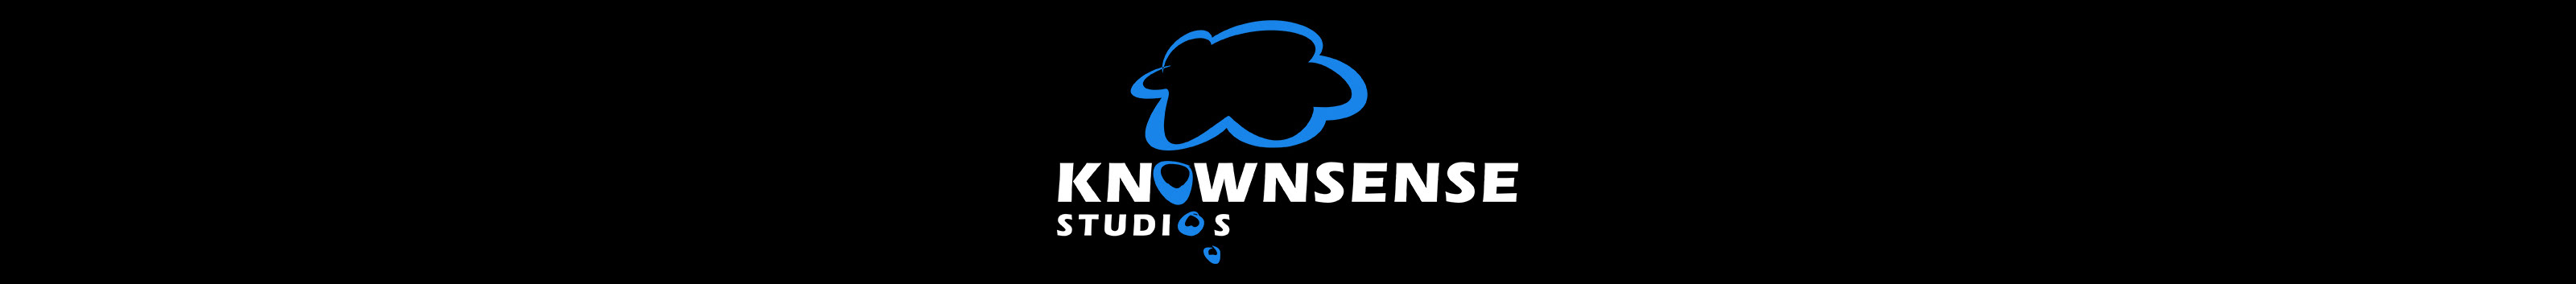 Knownsense Studios's profile banner